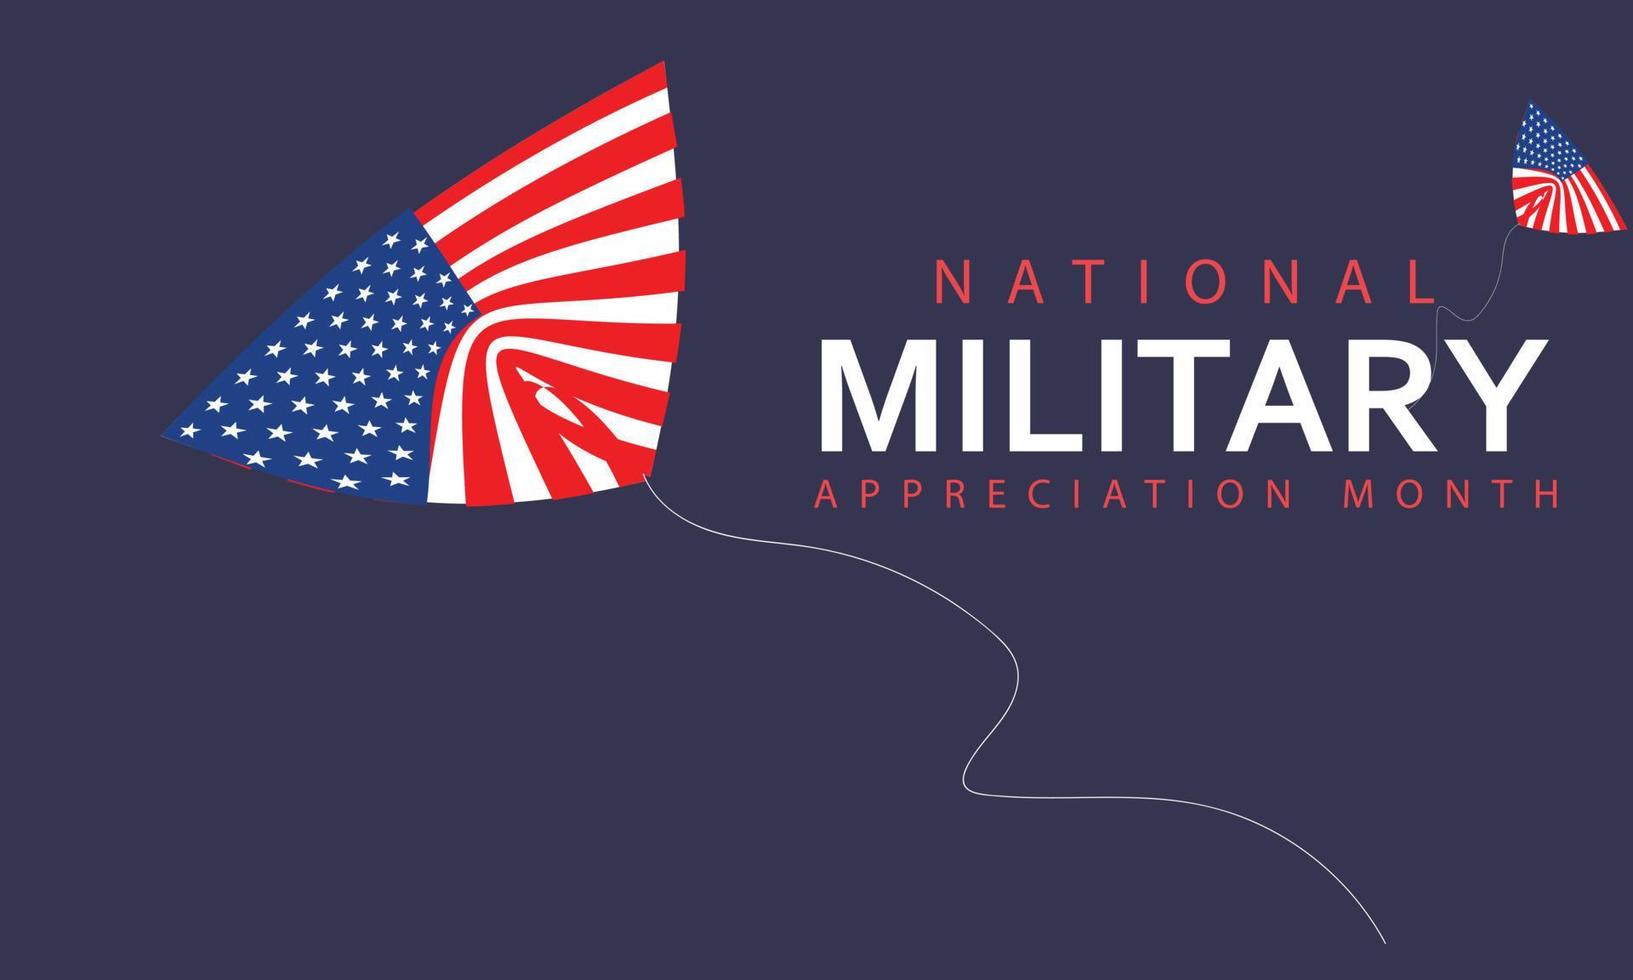 nationell militär uppskattning månad är observerats varje år i Maj. mall för bakgrund, baner, kort, affisch. vektor